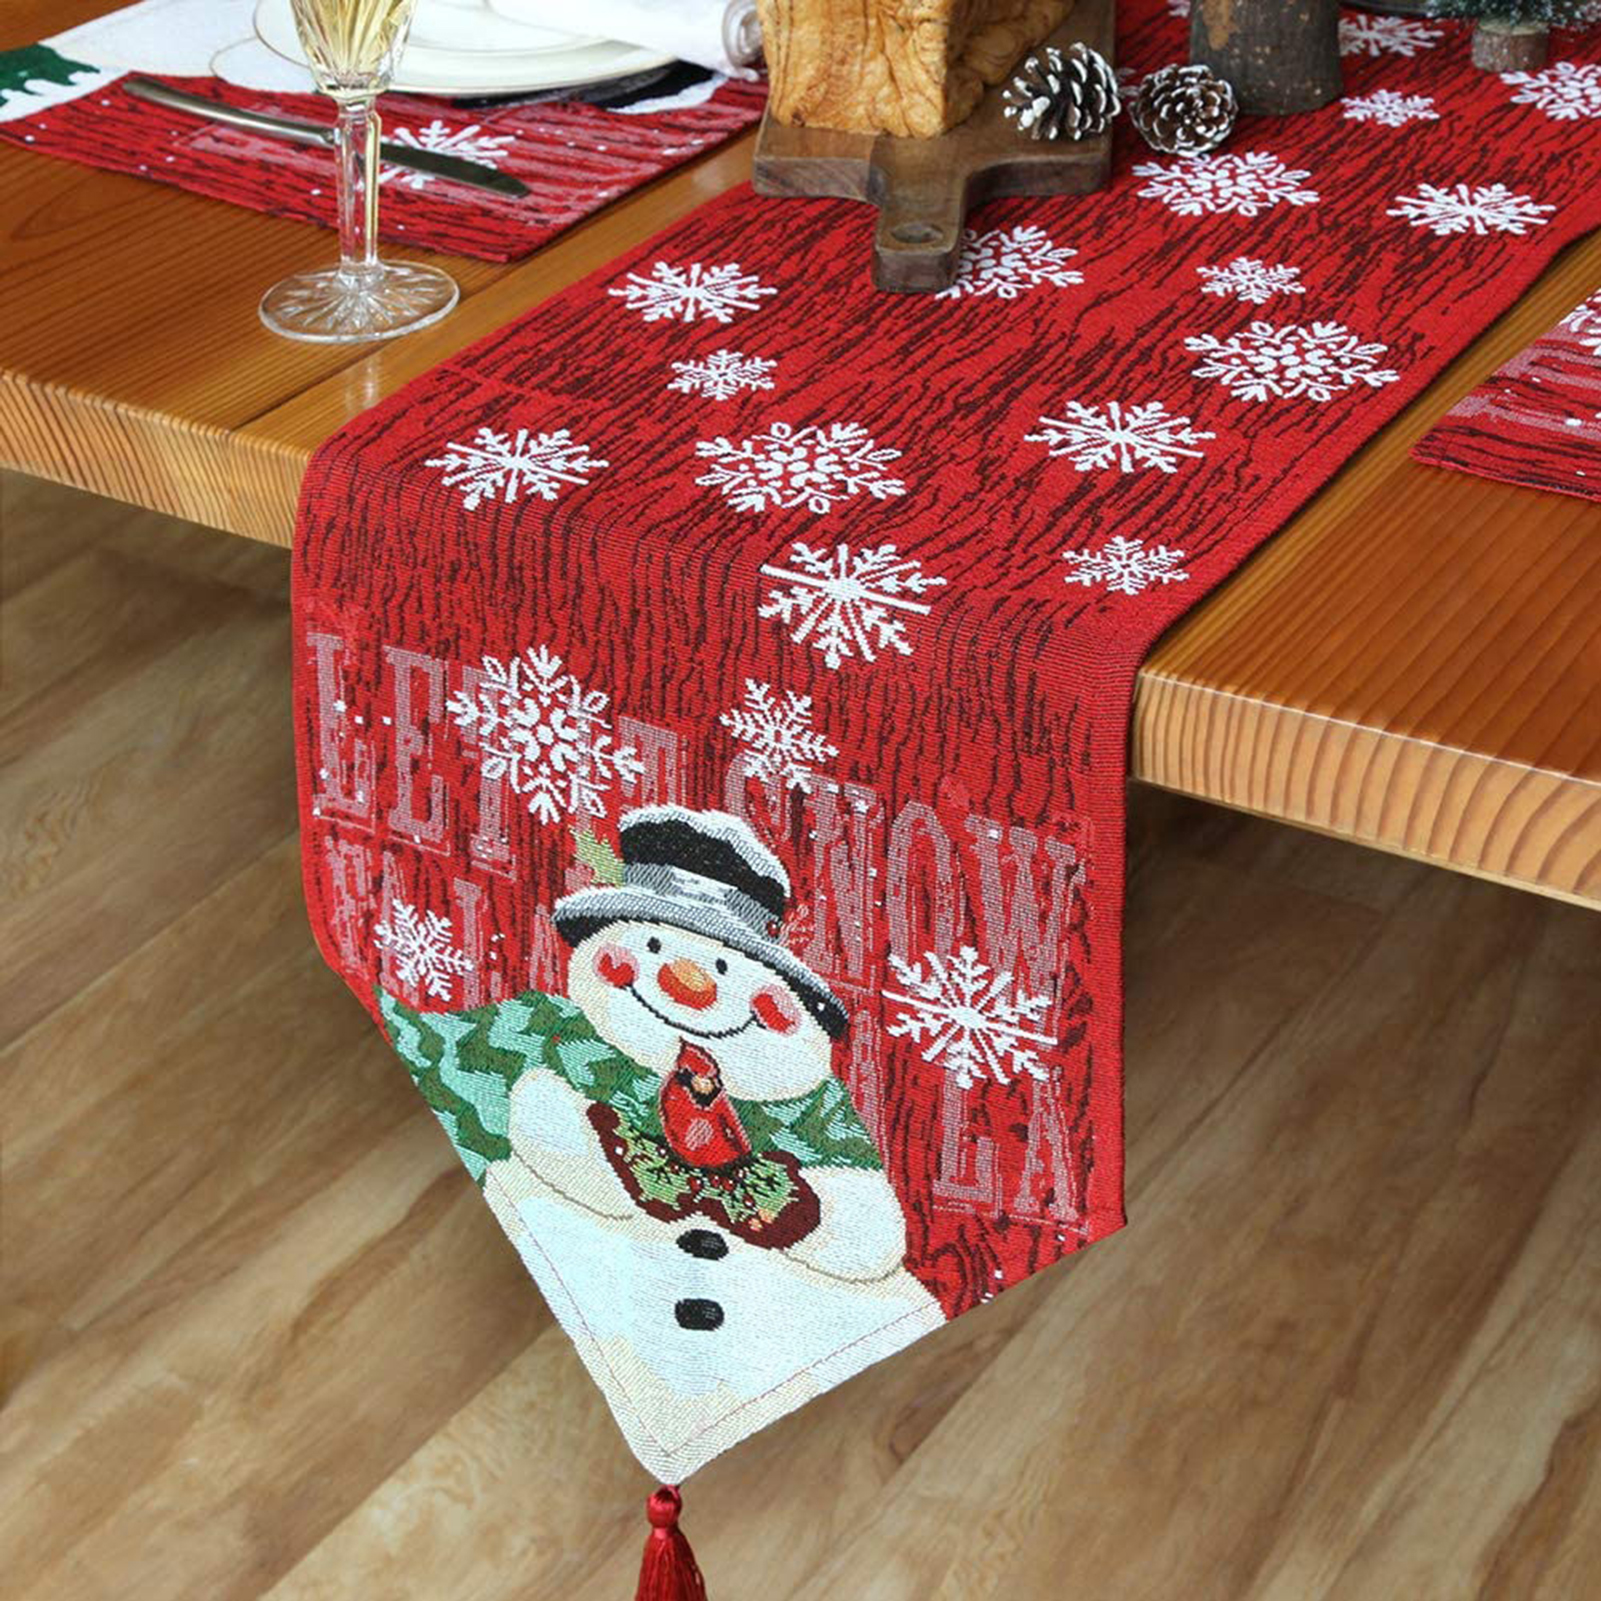 Hô biến phòng ăn gia đình ngập tràn không khí Giáng sinh thật dễ dàng chỉ bằng chiếc khăn trải bàn - Ảnh 7.